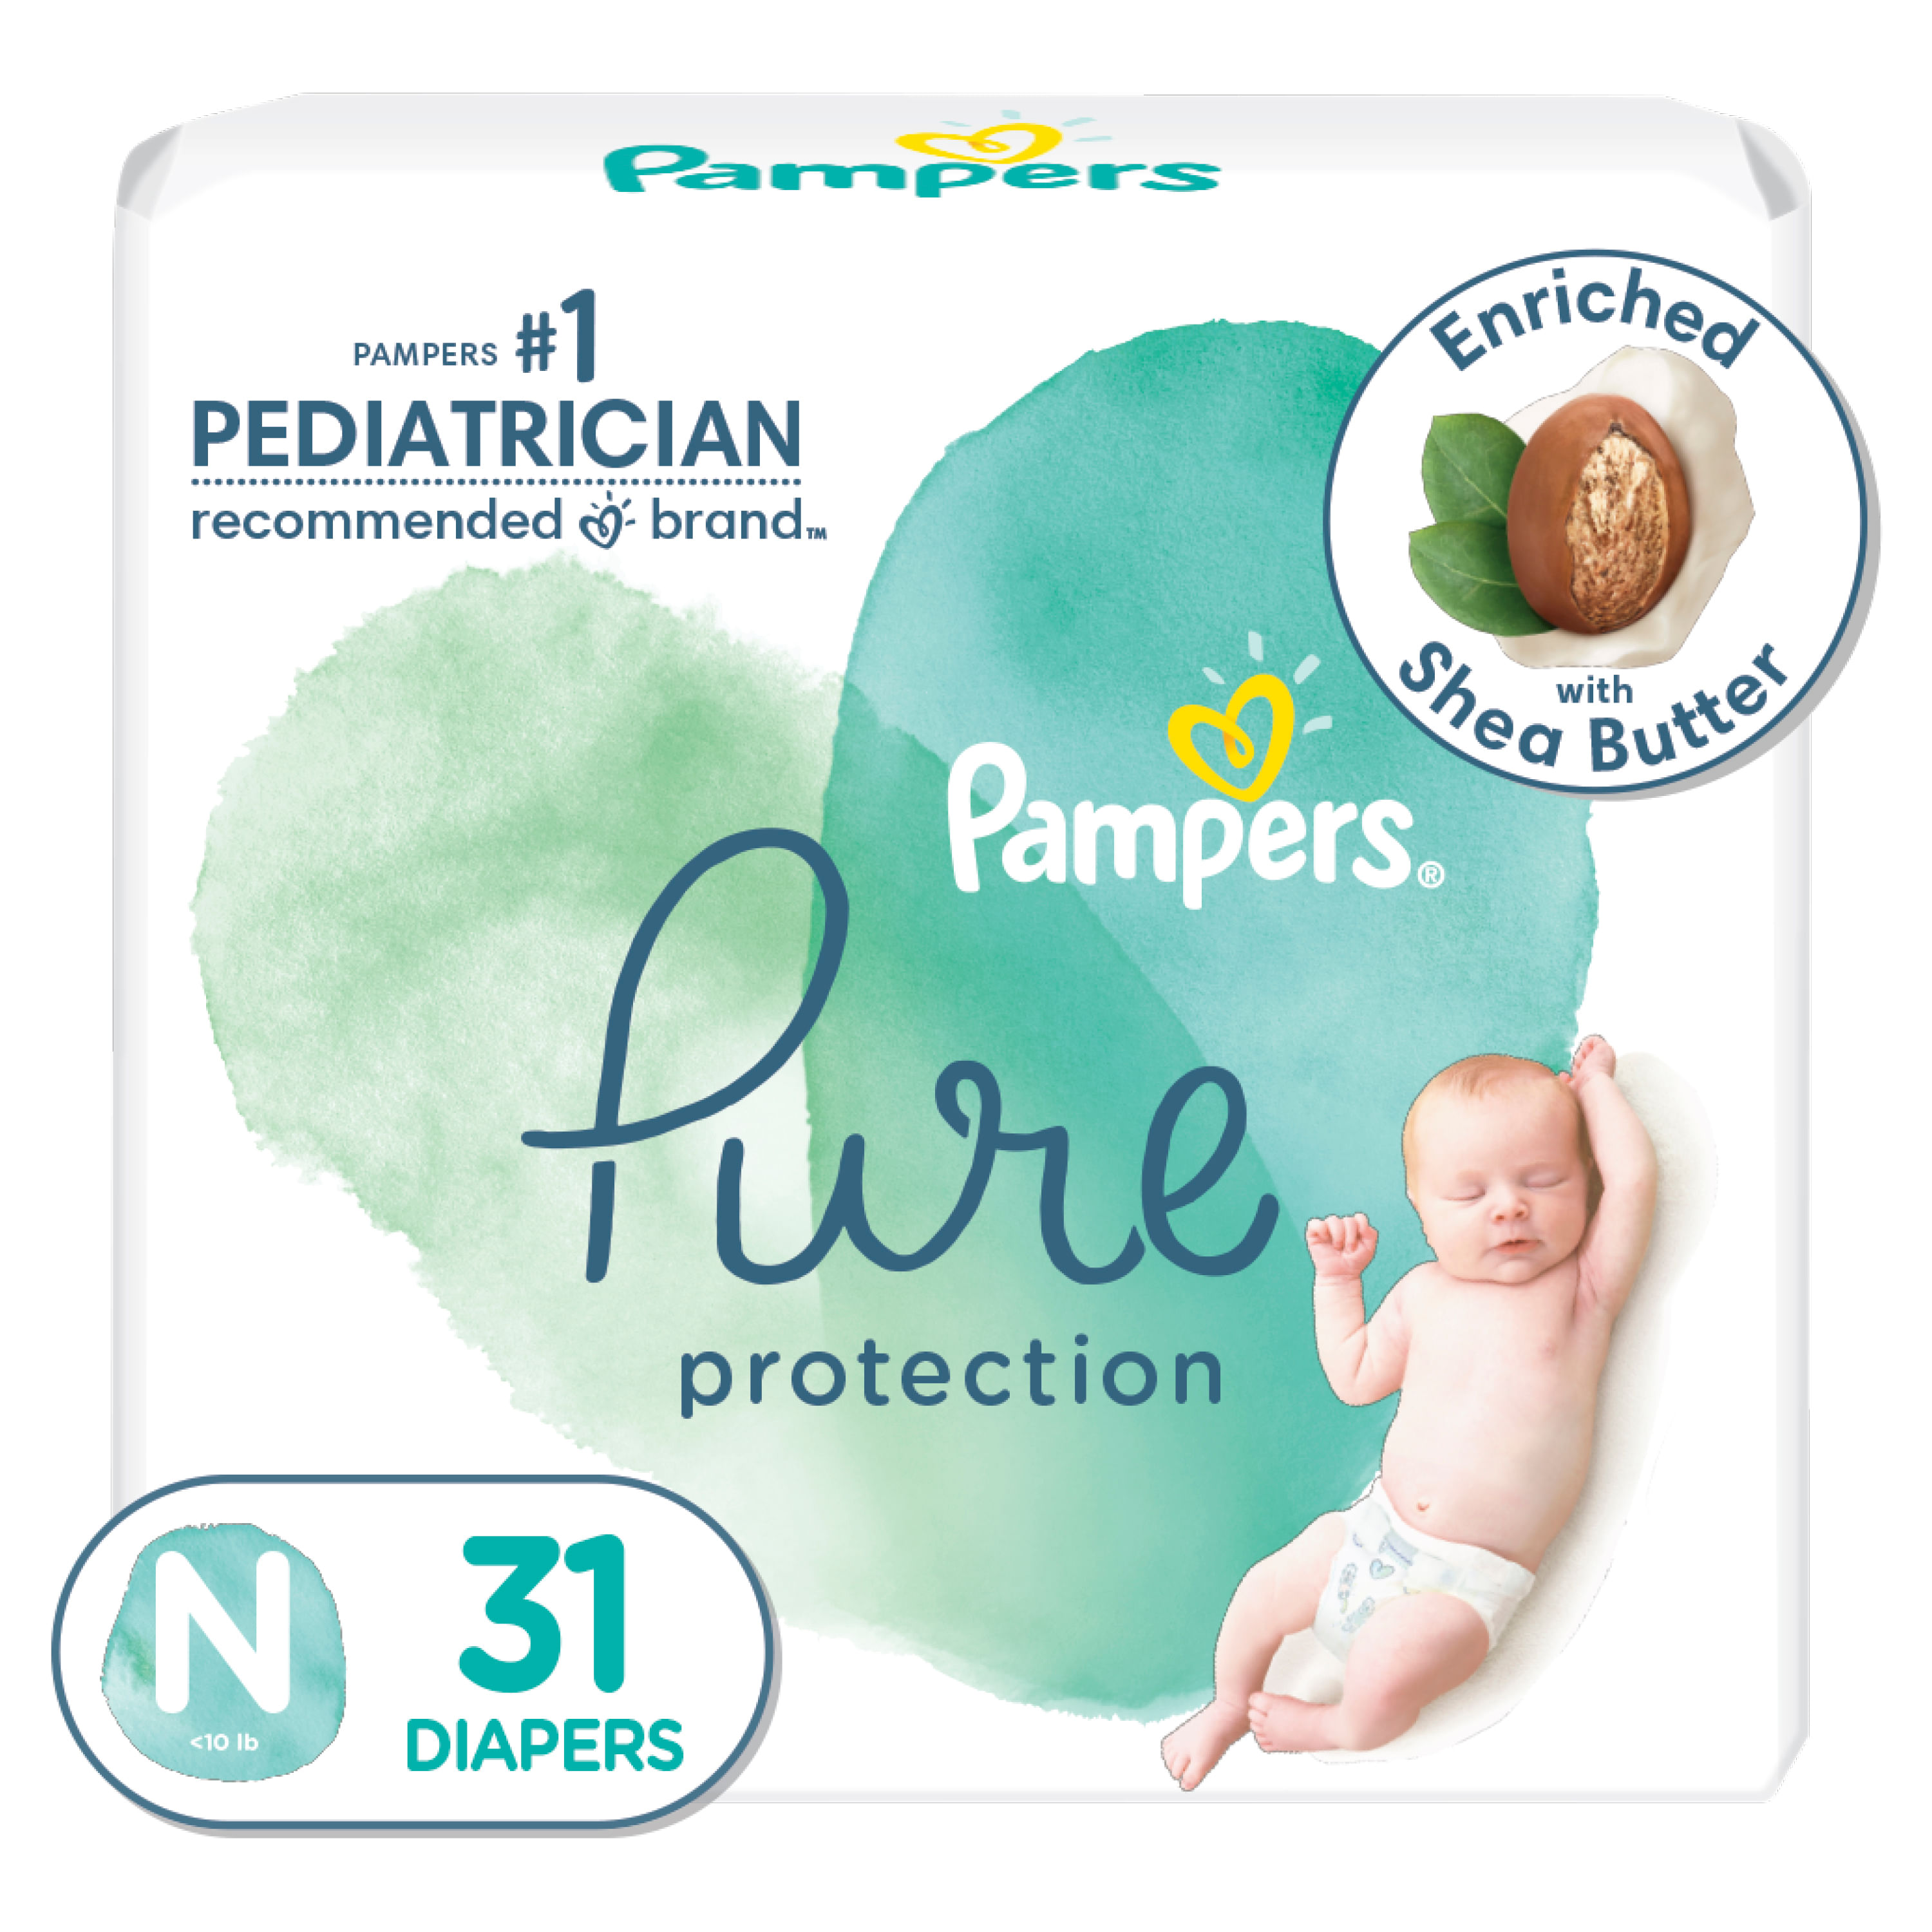 Pampers Pure Protection - Pañales desechables para bebé, talla 7,  suministro de 2 meses (2 x 88 unidades) con toallitas Aqua Pure para bebé,  12